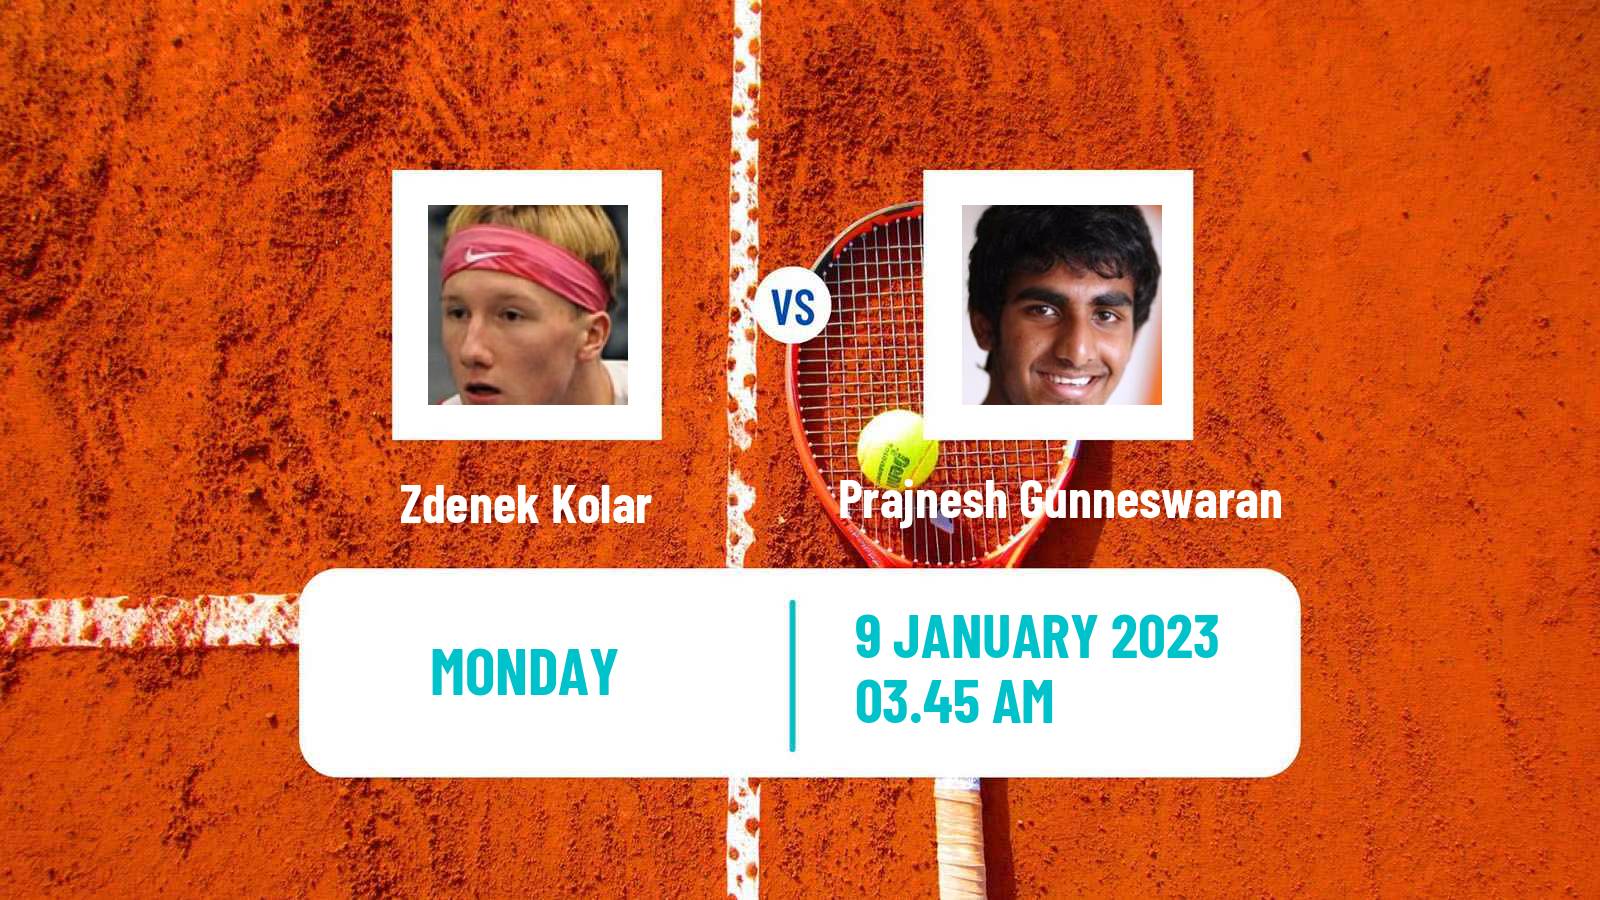 Tennis ATP Challenger Zdenek Kolar - Prajnesh Gunneswaran